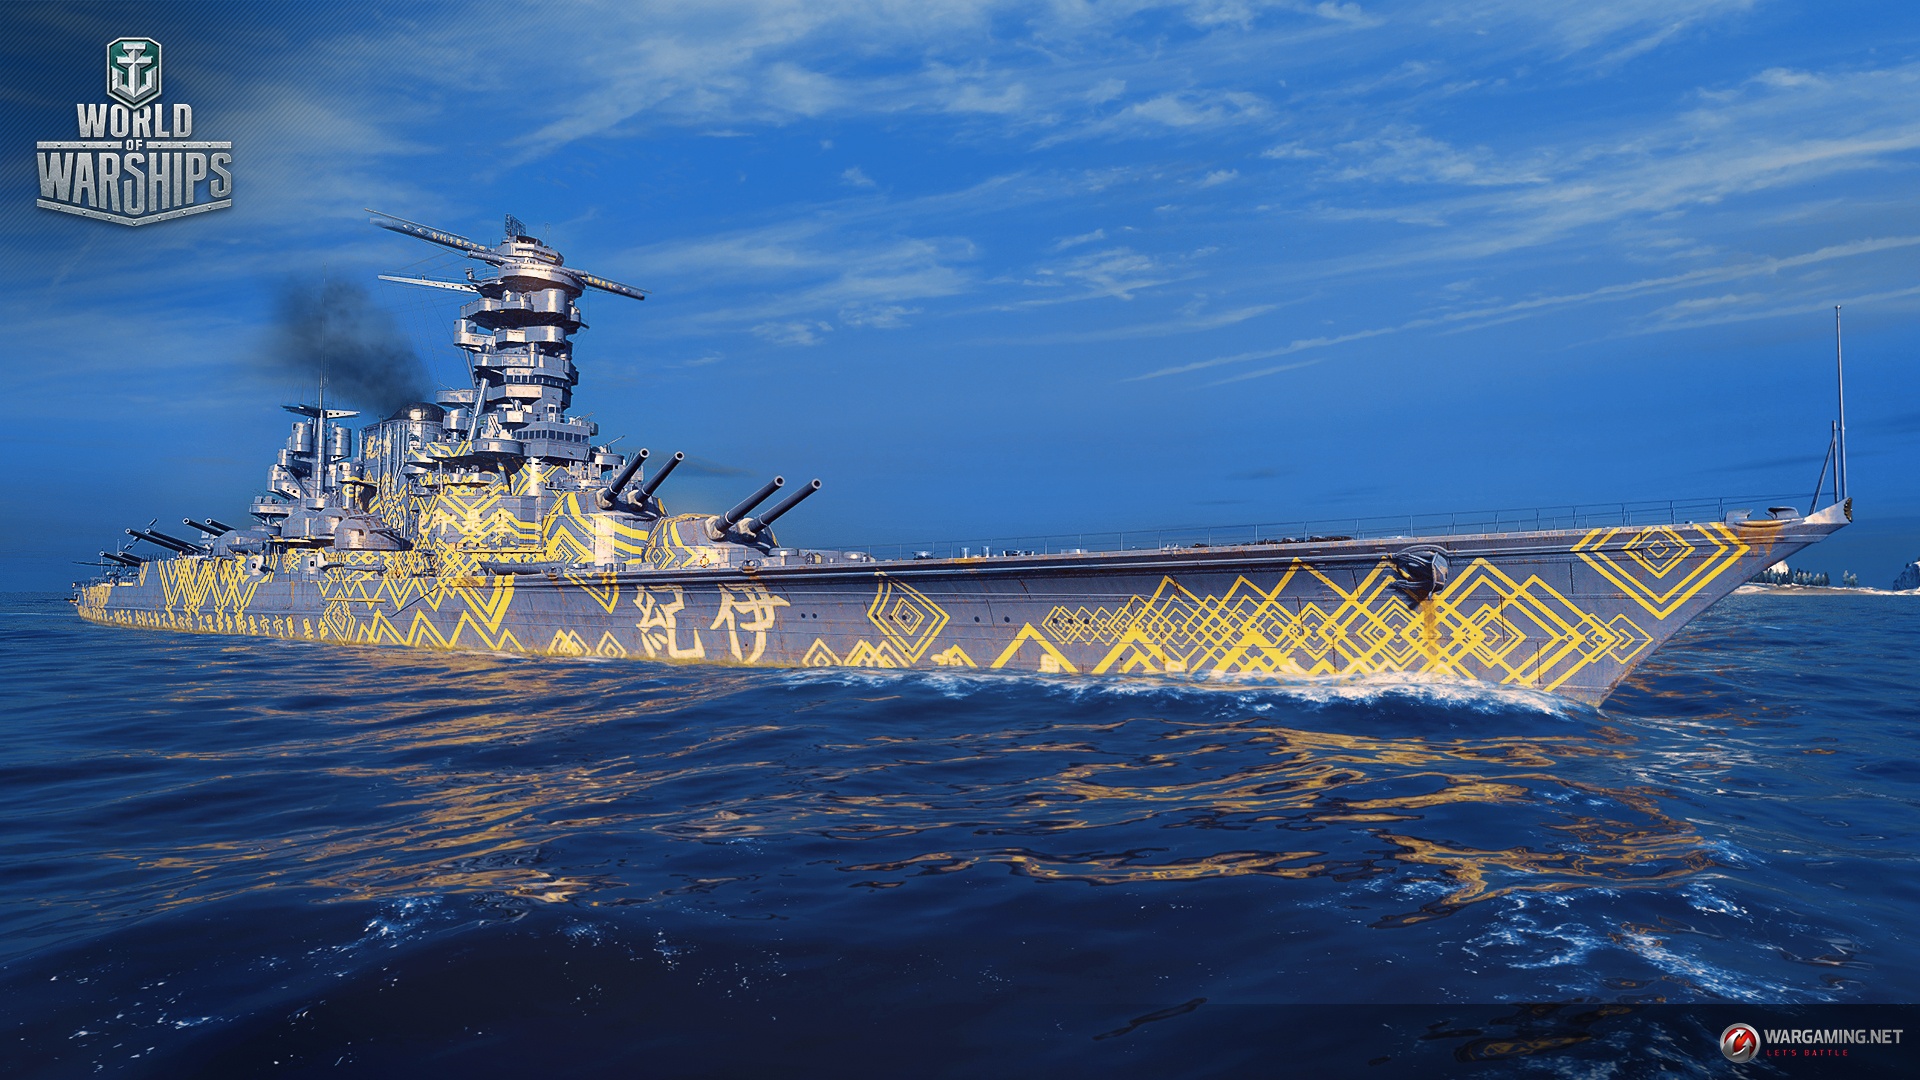 makoto kobayashi camo world of warships wiki